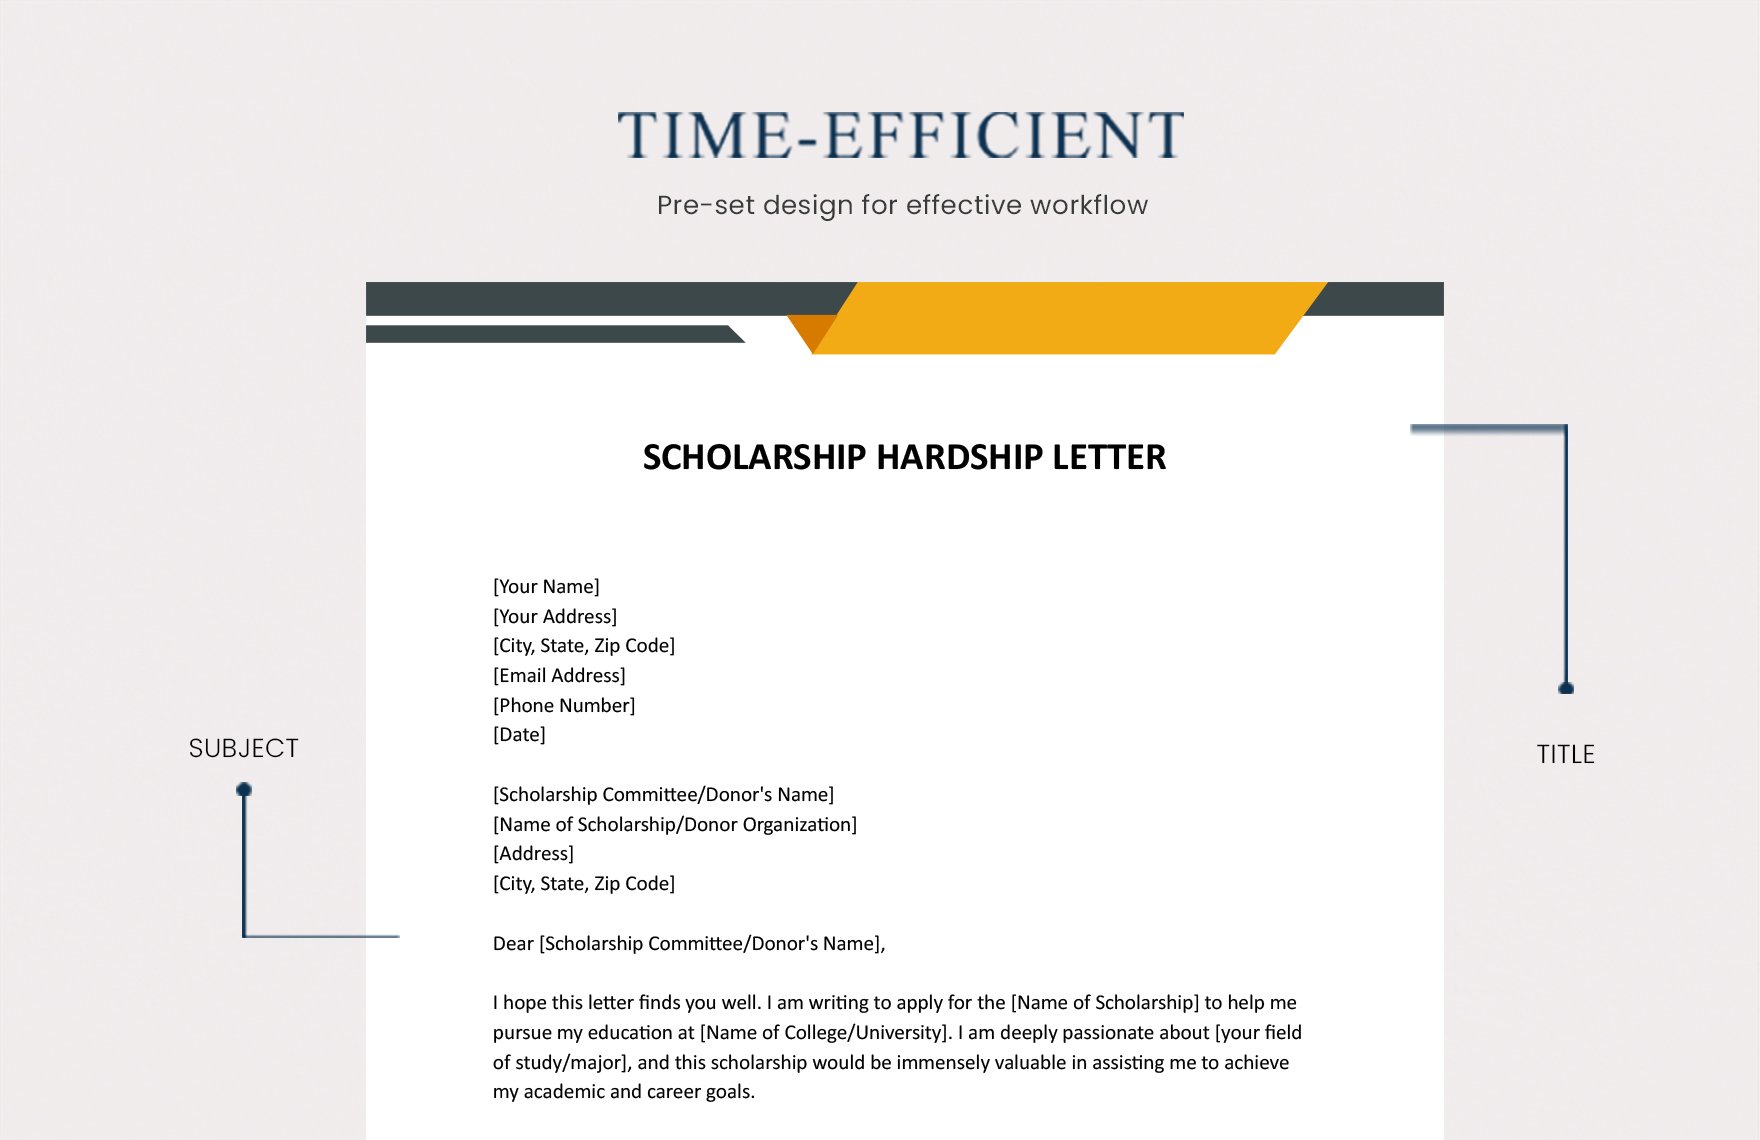 Scholarship Hardship Letter